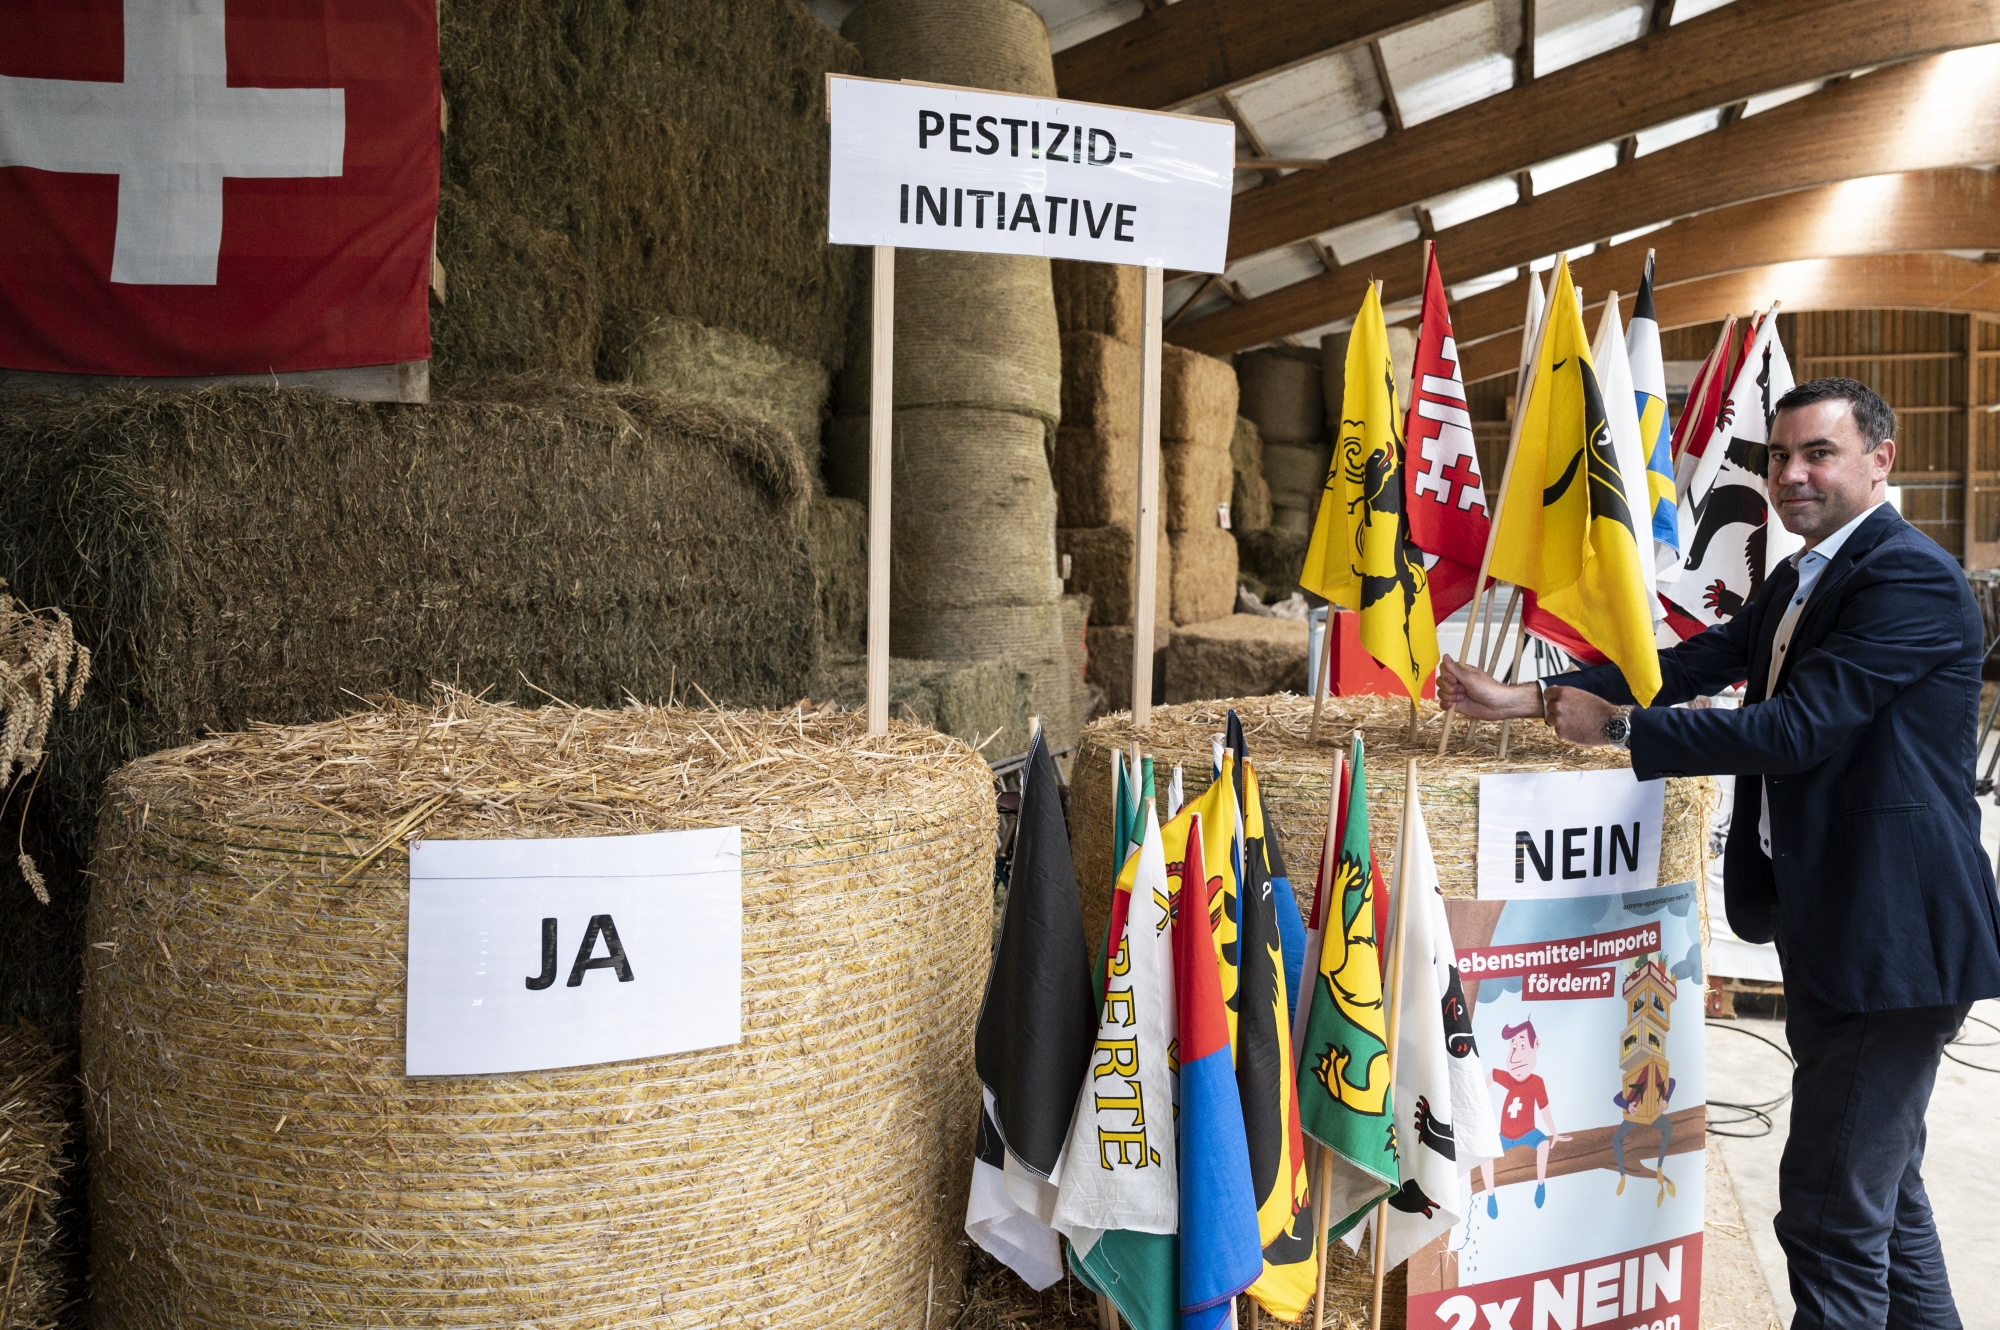 Martin Rufer, directeur de l’Union suisse des paysans, place les drapeaux cantonaux correspondants dans la botte de foin du «Non" pour indiquer un résultat intermédiaire.